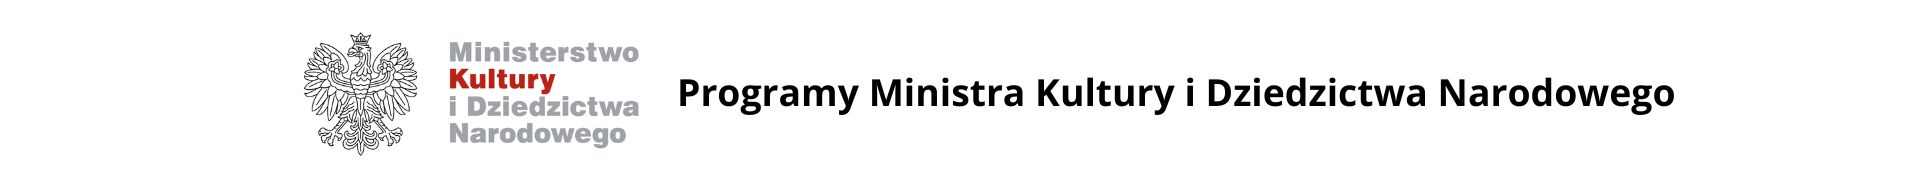 grafika - na białym tle po lewej stronie logo MKiDN (biały orzeł i nazwa ministerstwa), po prawej napis 